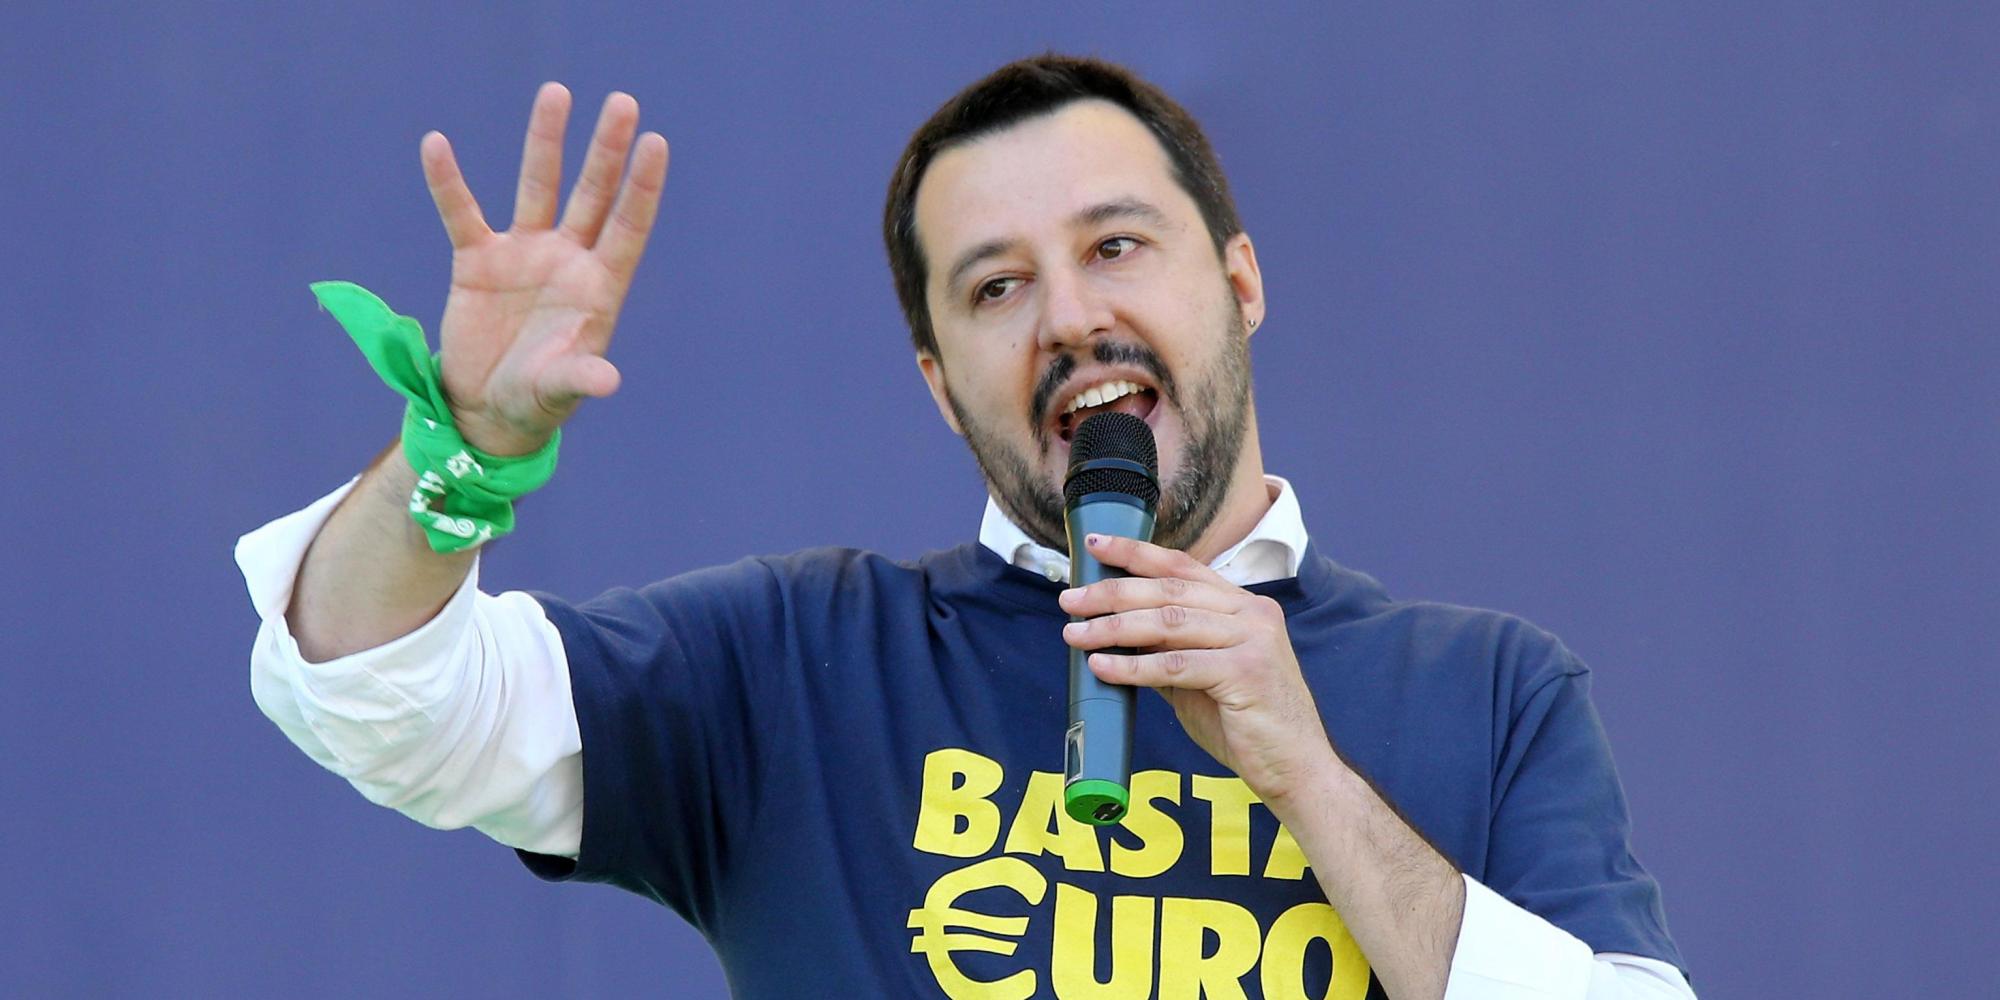 Lega, Salvini crea un nuovo movimento per la conquista del Sud